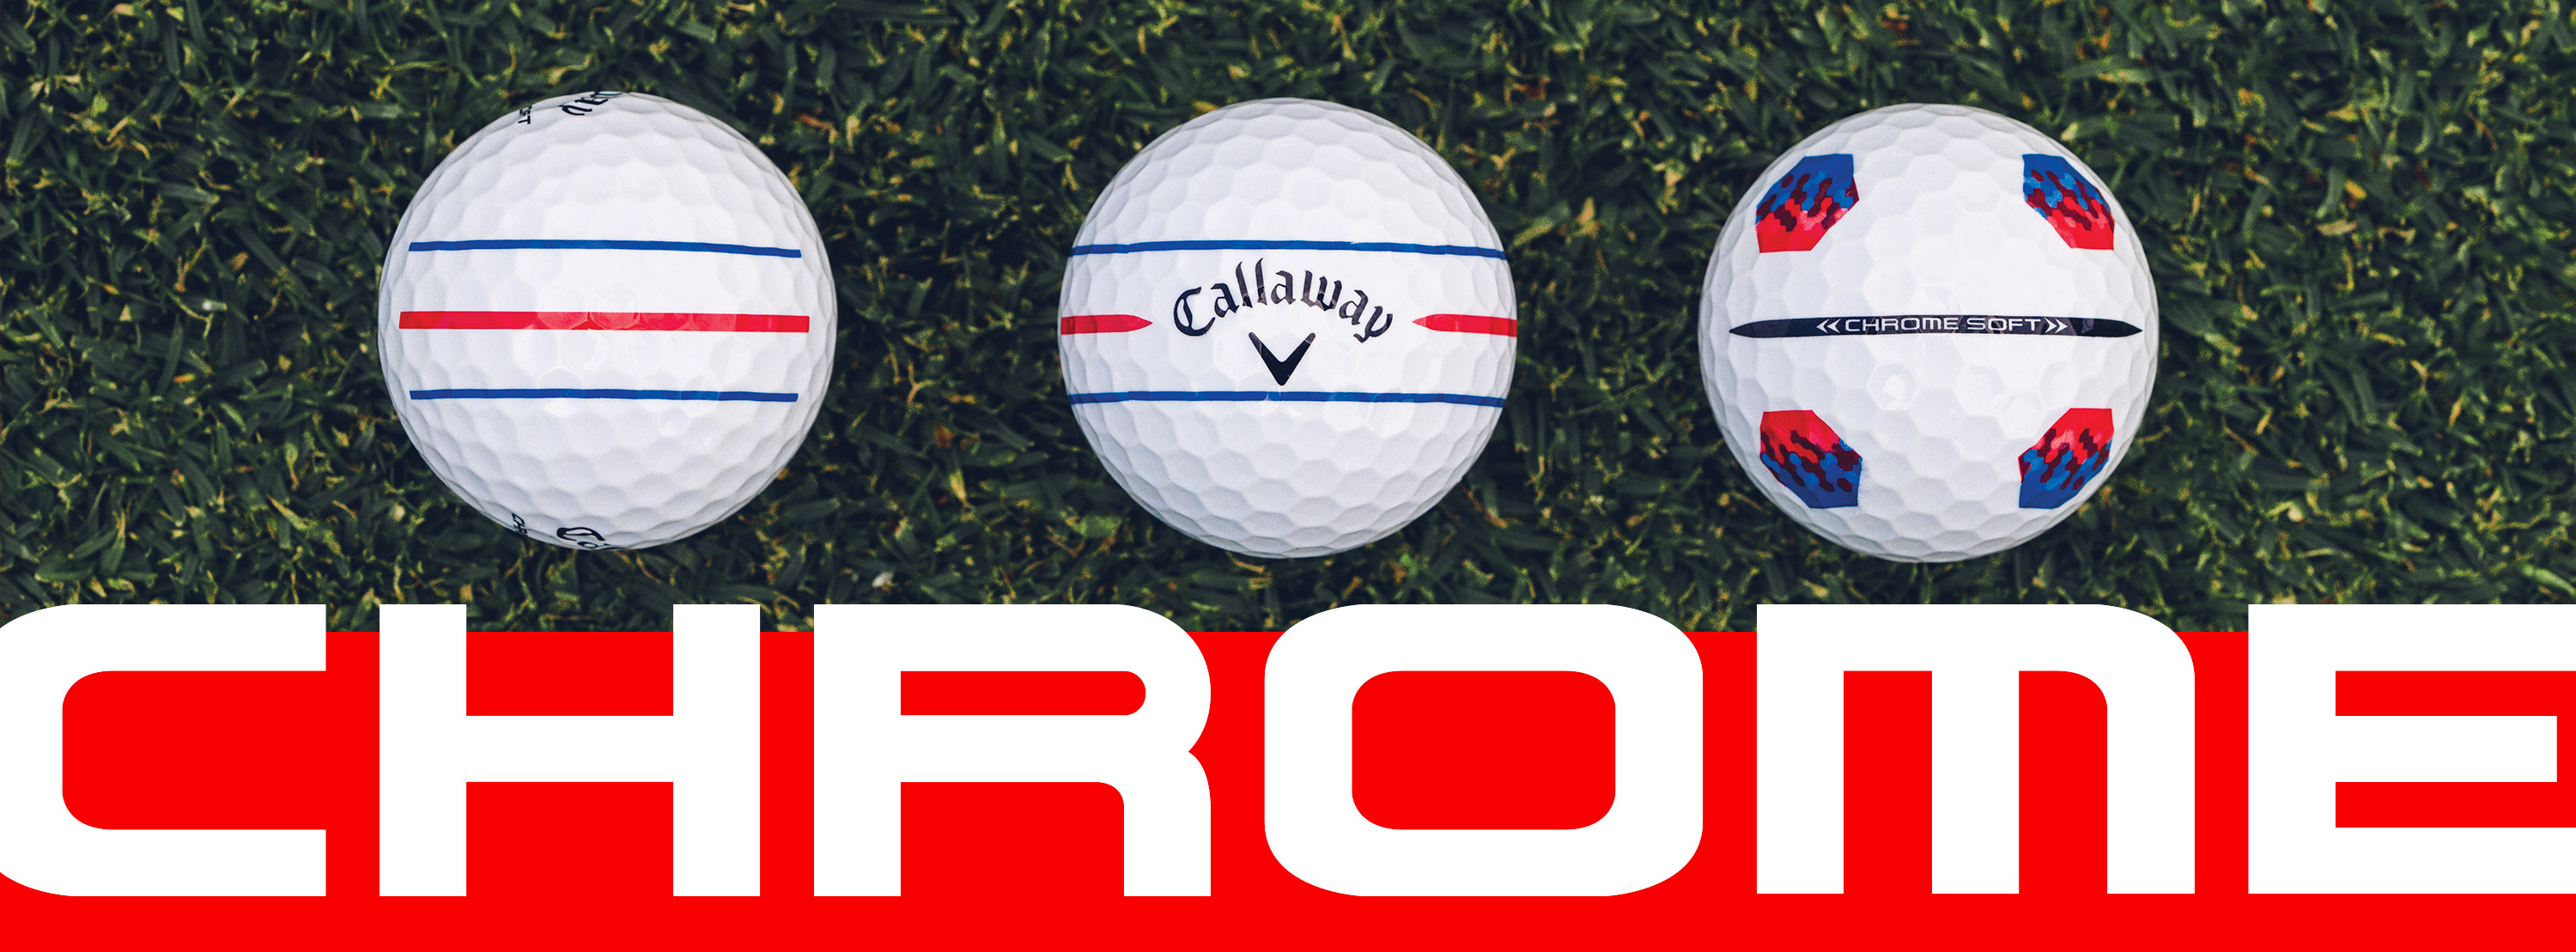 Chrome Soft 24 Golf Balls